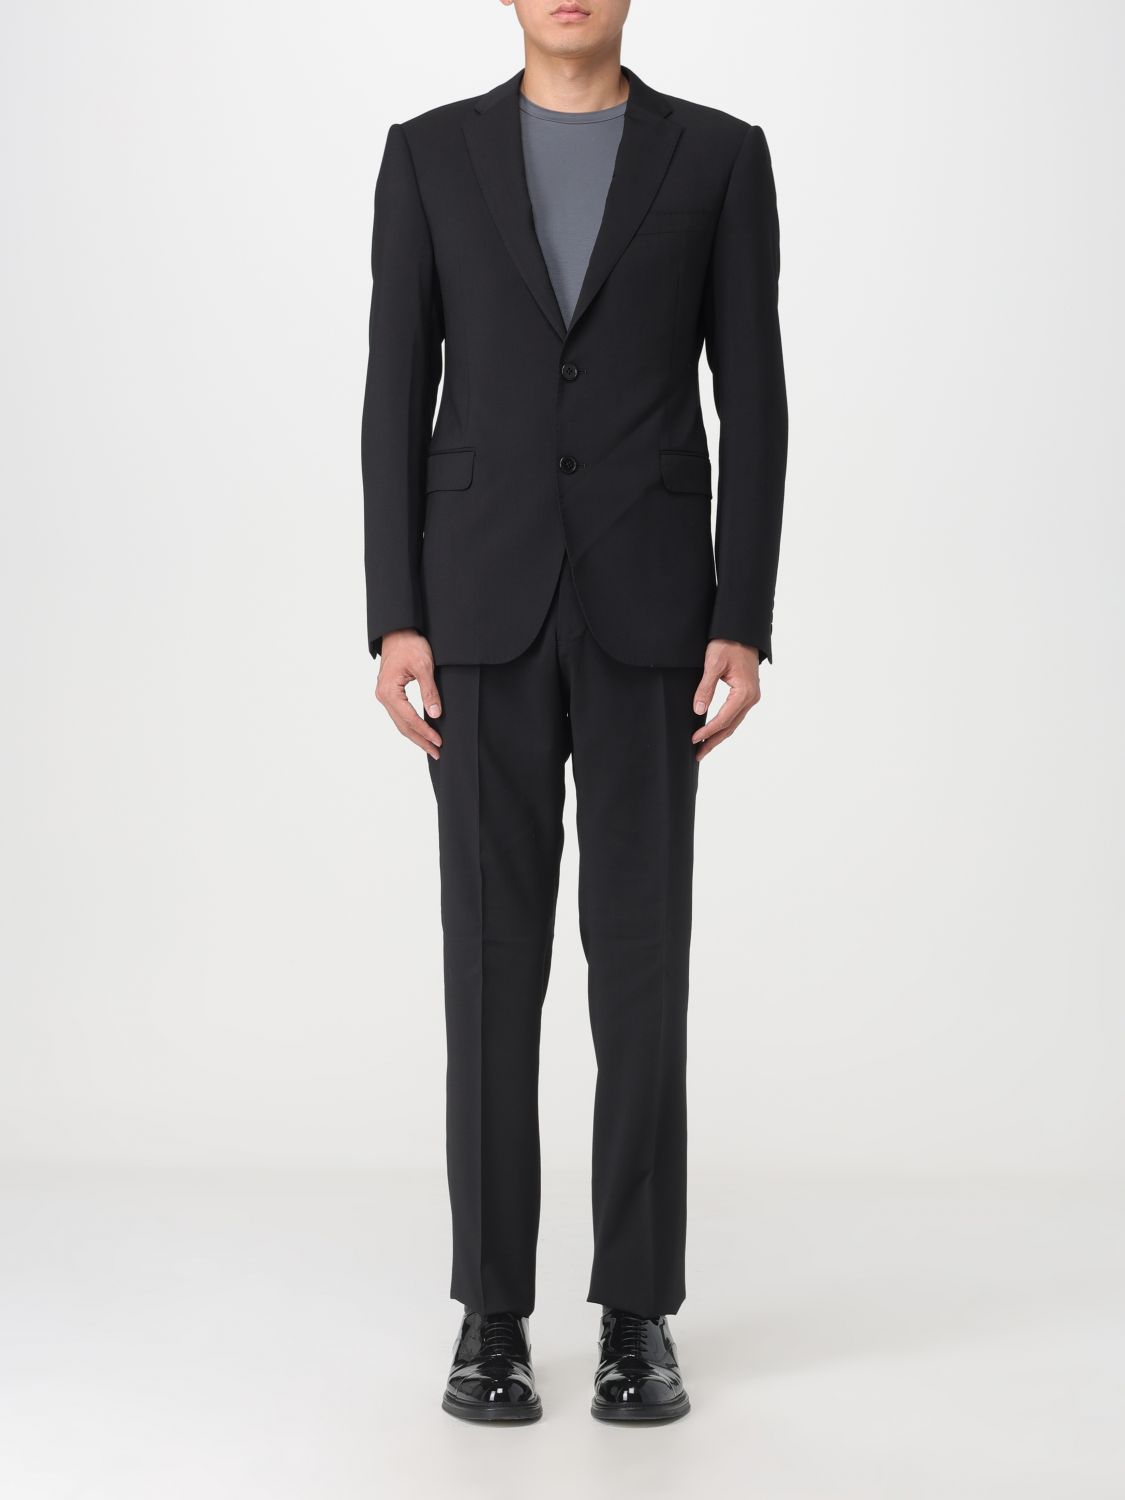 EMPORIO ARMANI: suit for man - Black | Emporio Armani suit H41VMB01504 ...